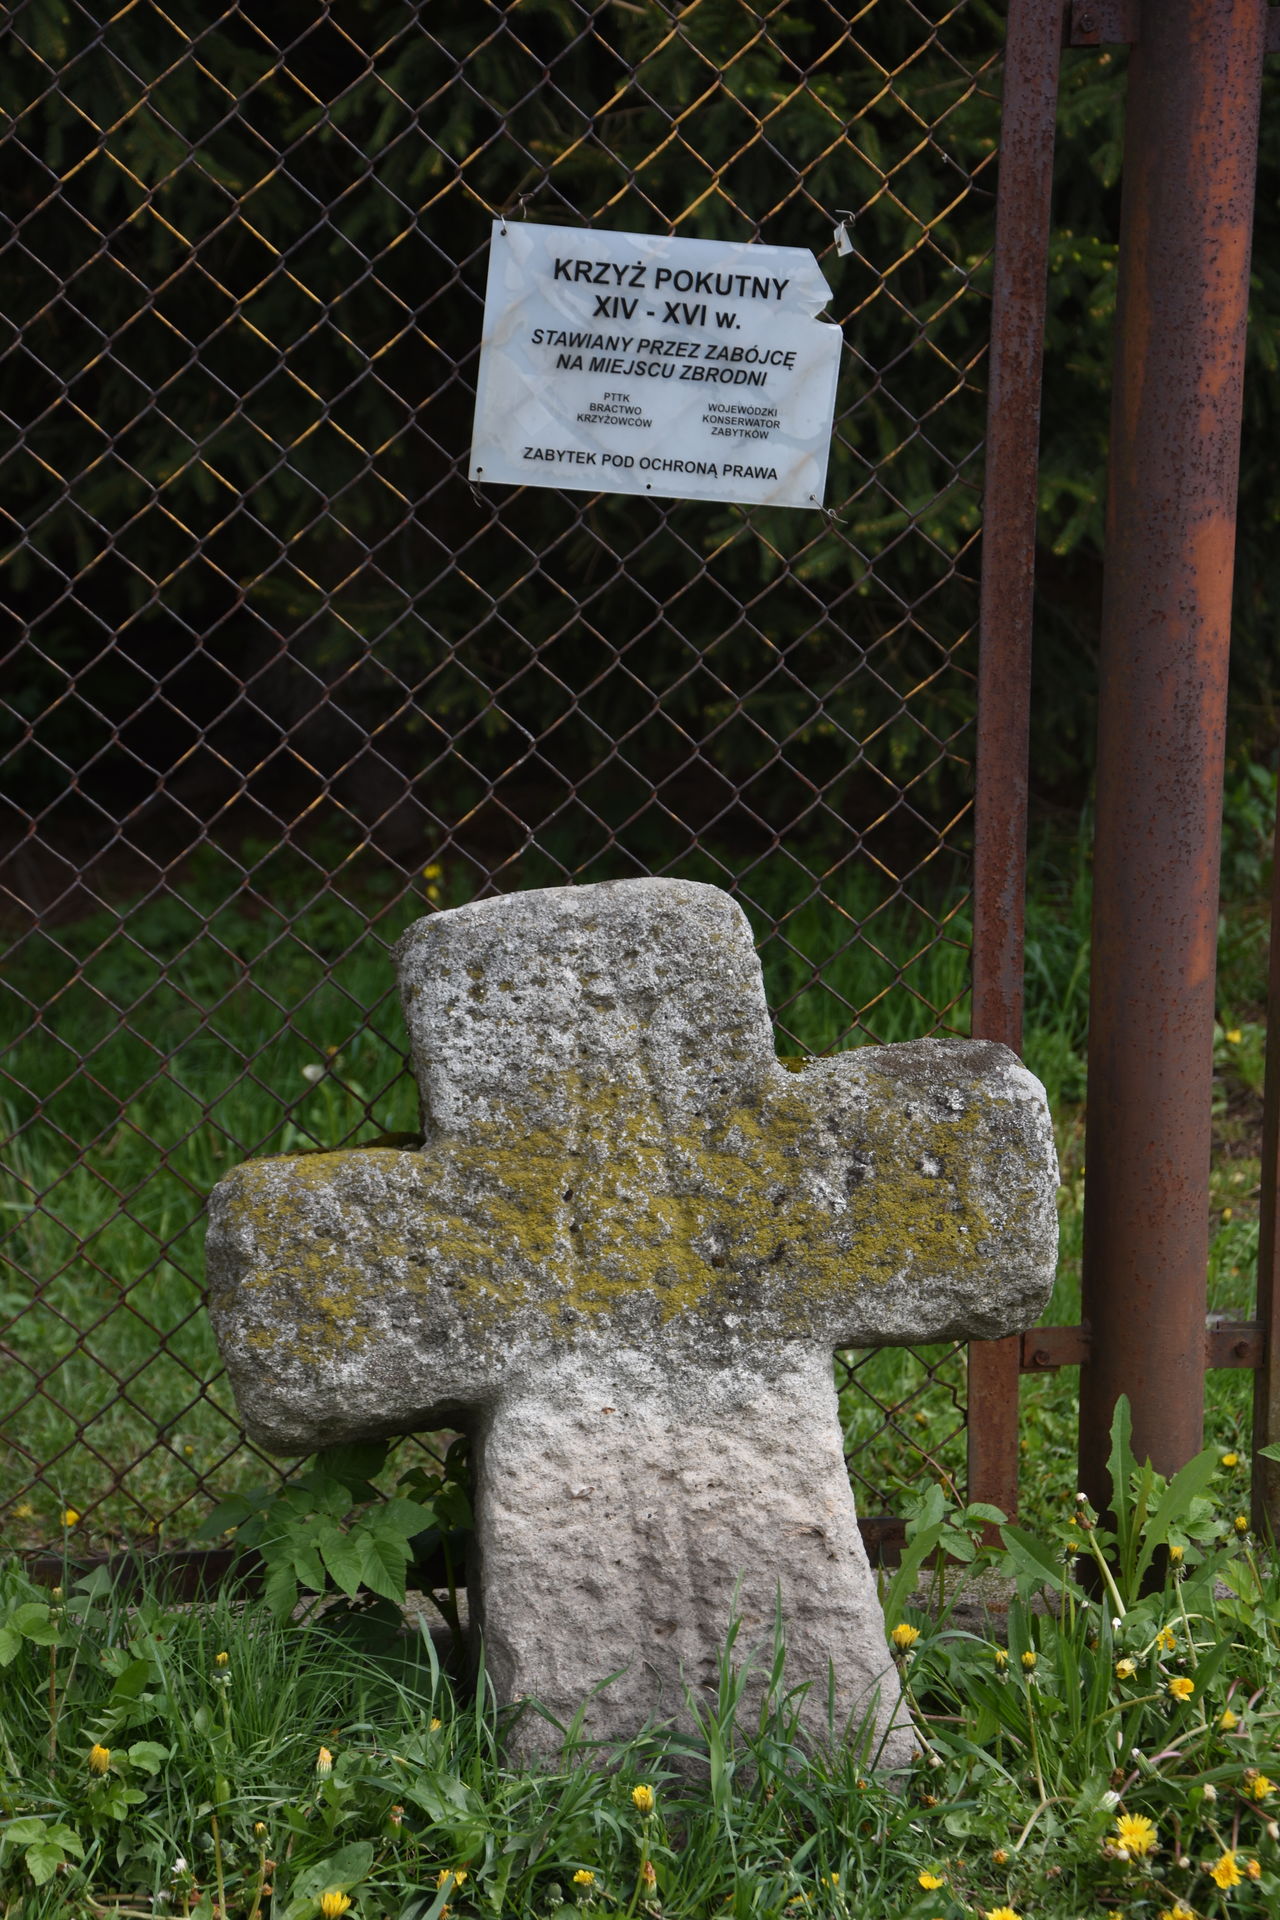 Krzyż pokutny w Bukowcu